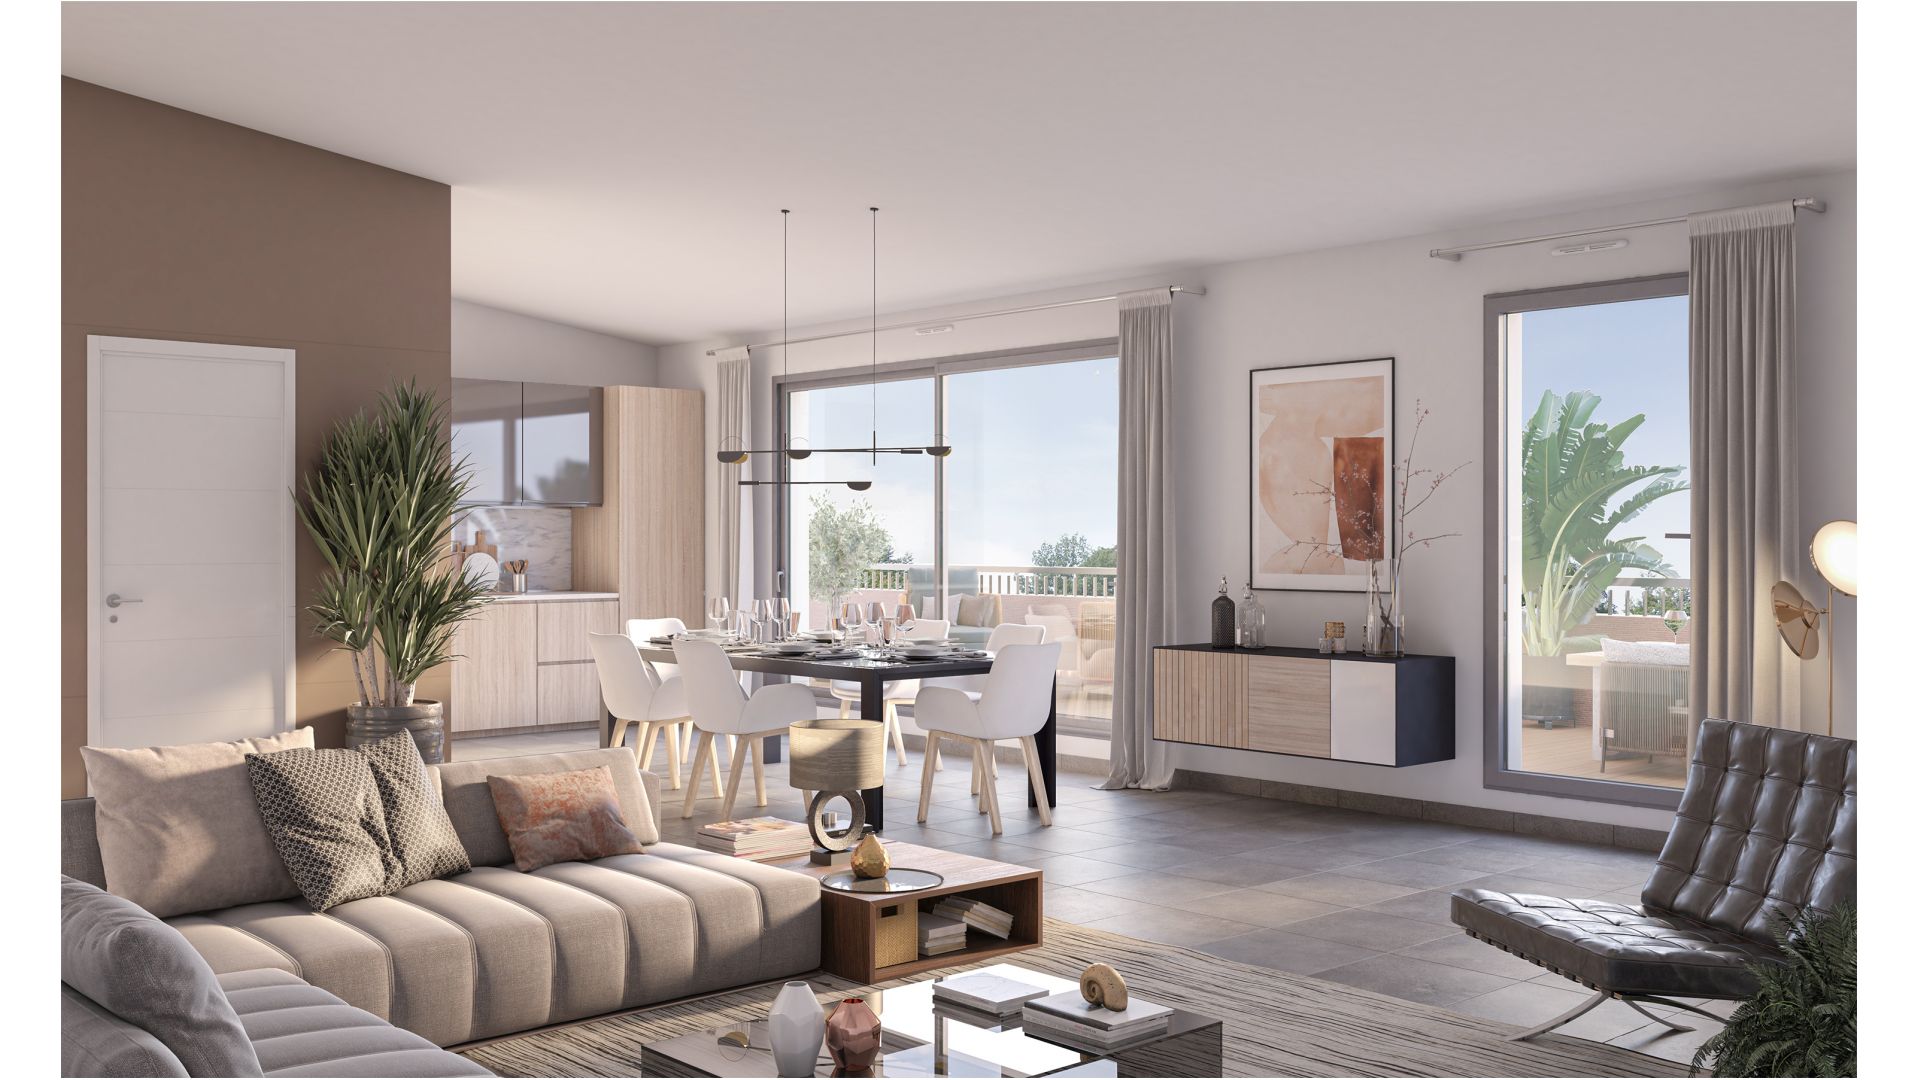 Greencity immobilier - achat appartements neufs du T1 au T5 - Résidence Central Park - 31400 Toulouse